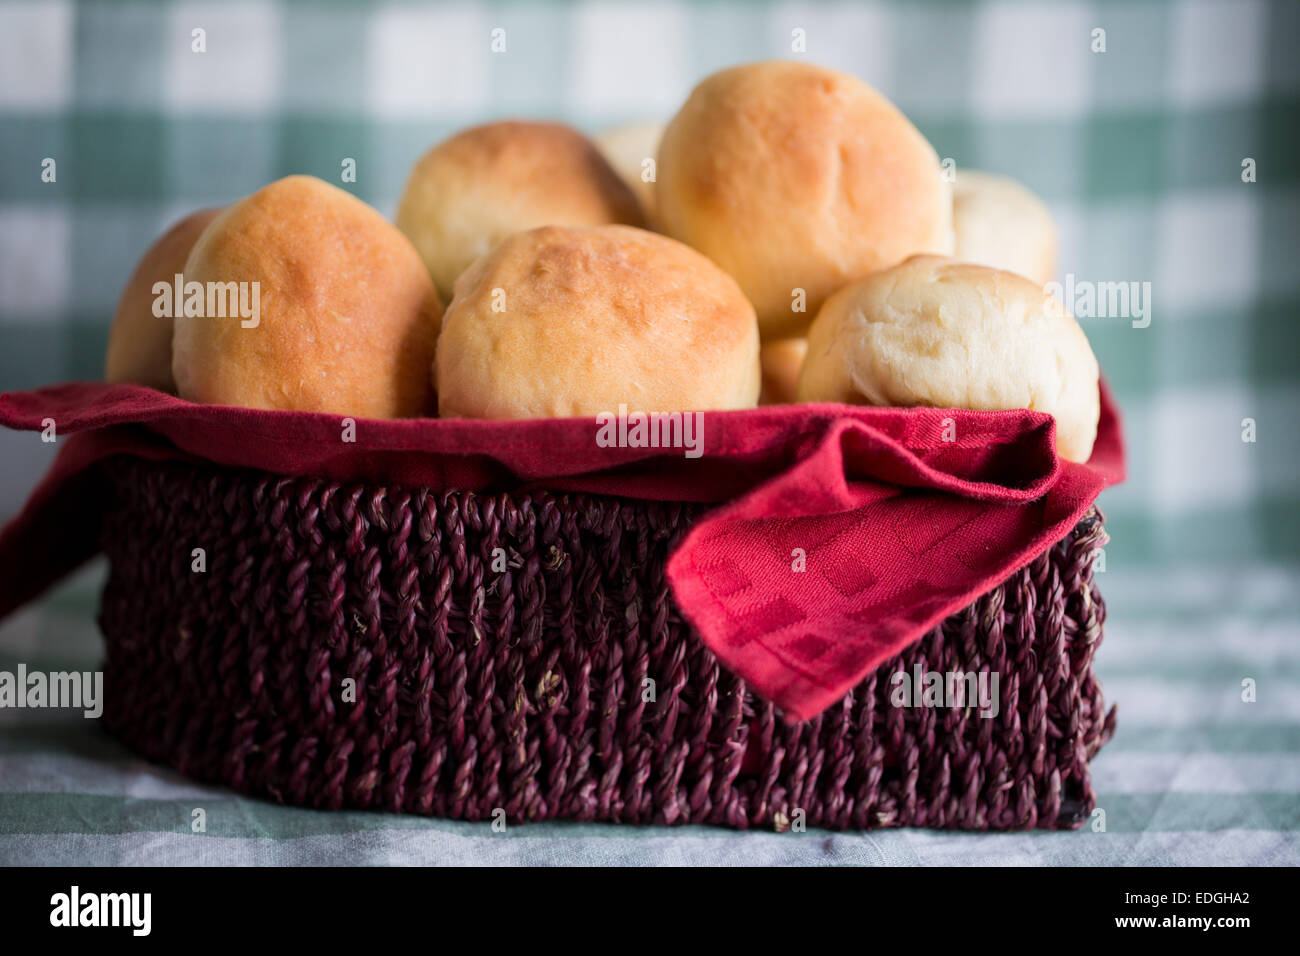 Kleine Brötchen oder Brot serviert in einem hölzernen Korb Stockfoto